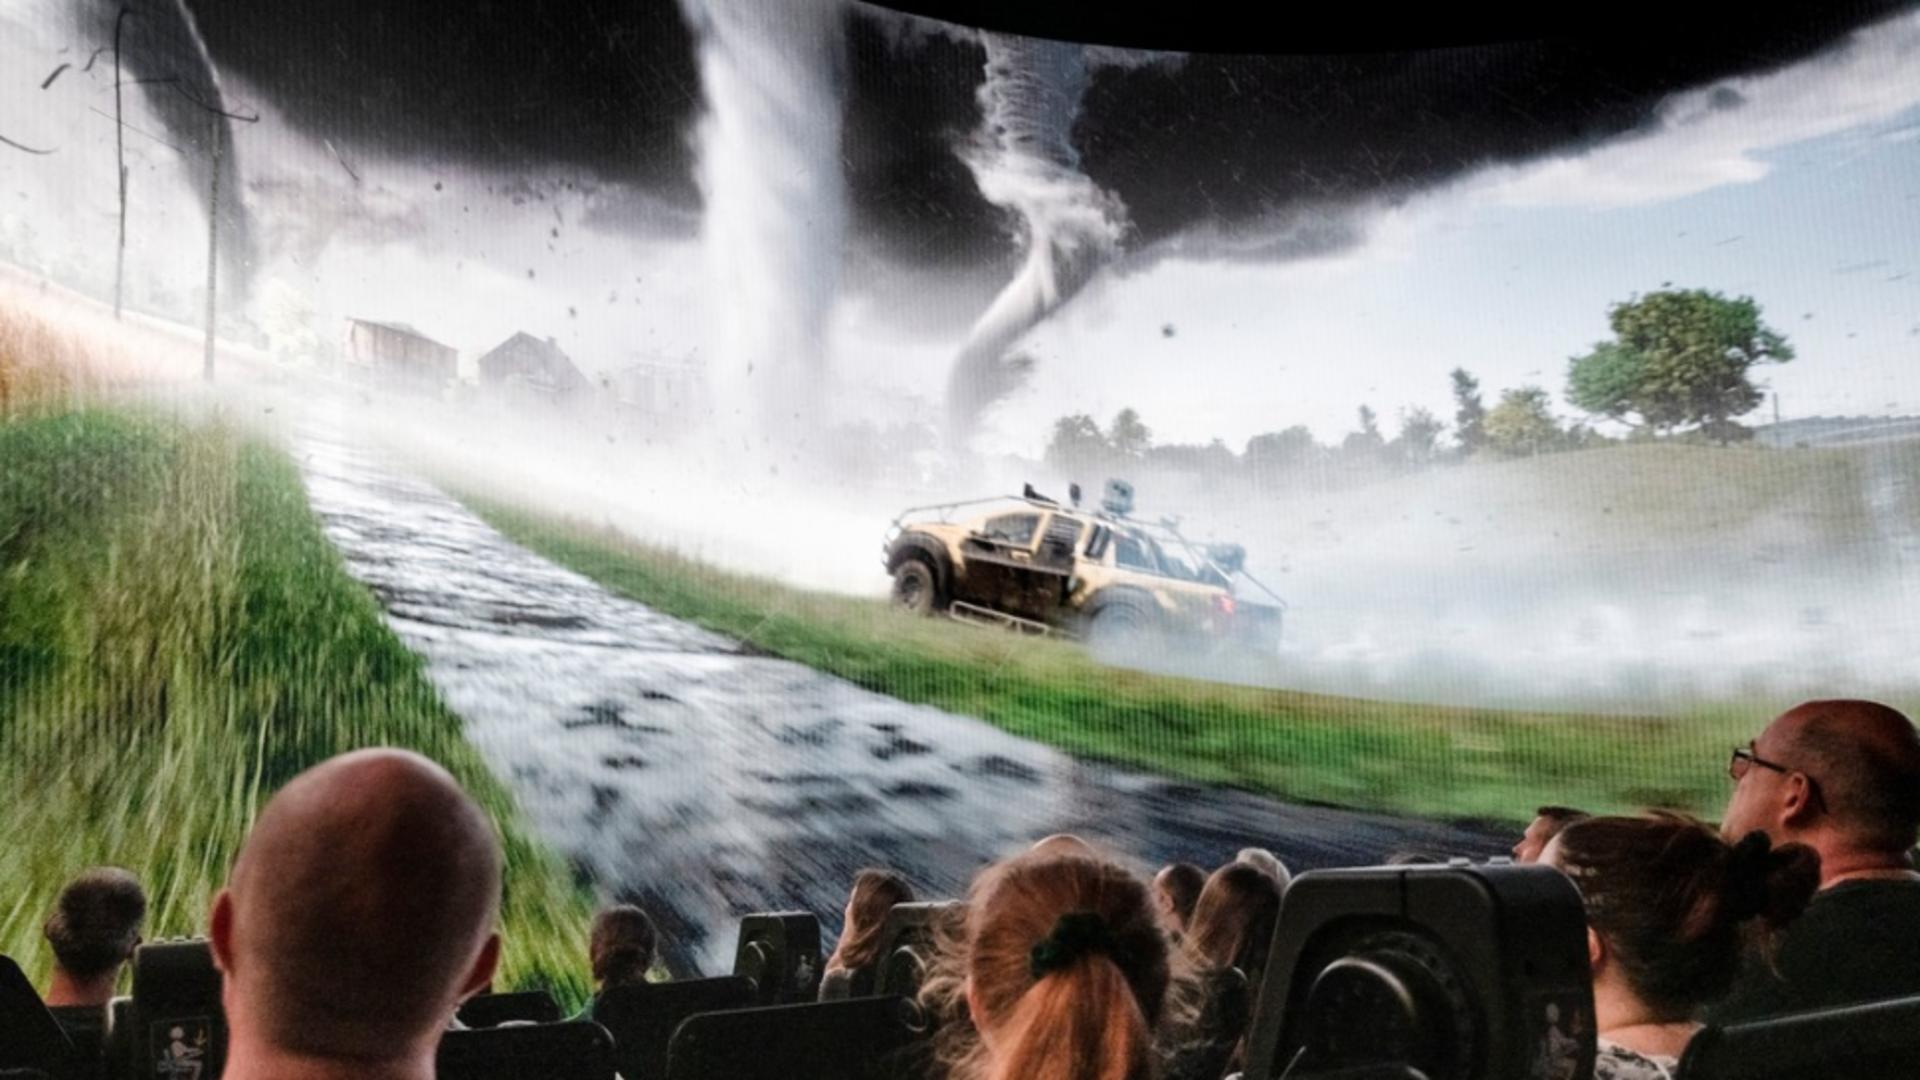 Filmele despre catastrofe meteo sunt deja depășite de realitate (Profimedia)